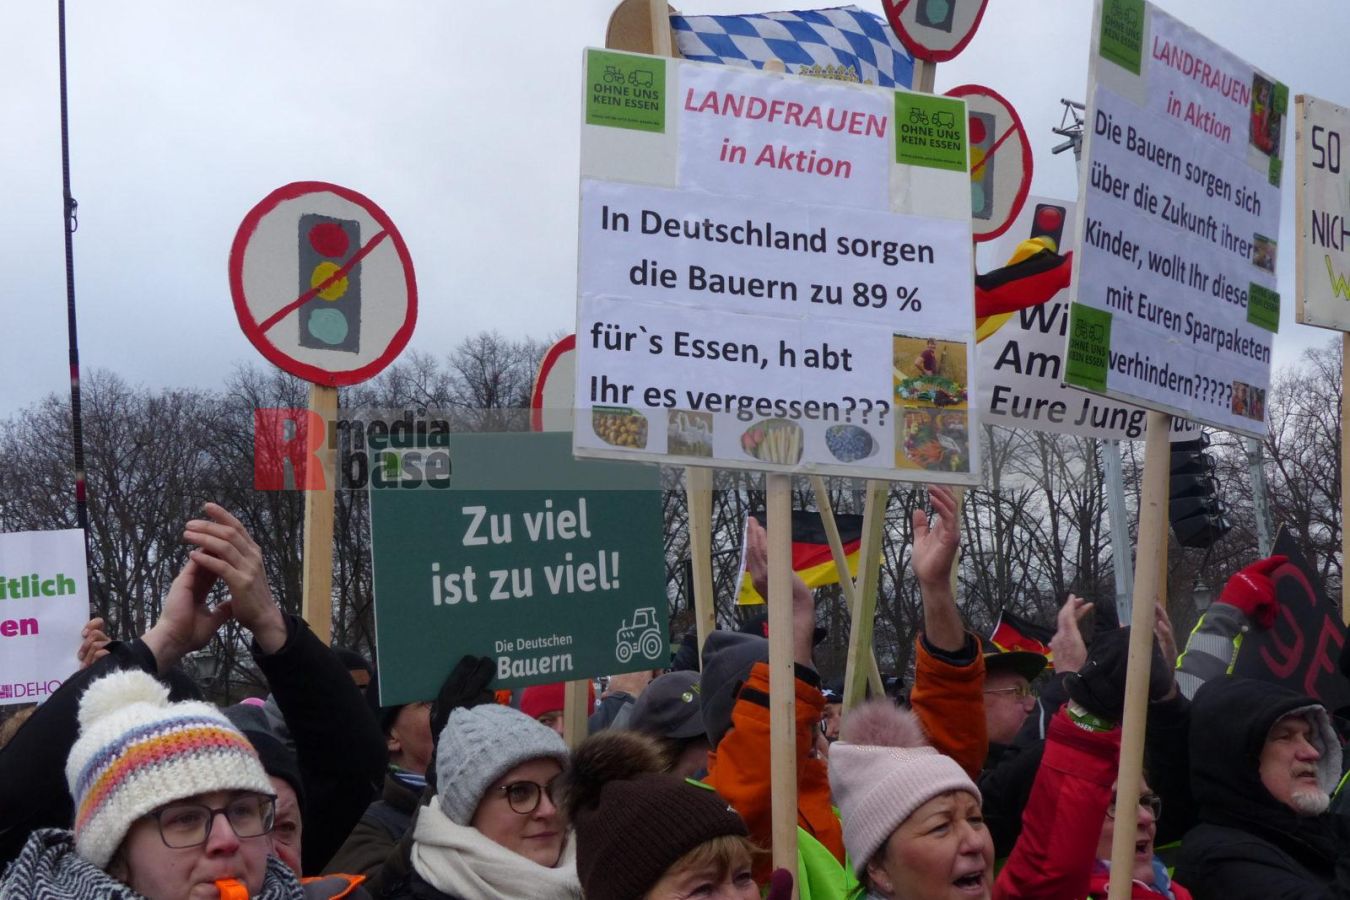 Bauernprotest in Berlin <i>Bild Denner/R-mediabase</i> <br><a href=/confor2/?bld=79032&pst=78995&aid=86&i1=Denner/R-mediabase>Download Bild 79032</a>  <br><a href=/?p=78995>Zum Beitrag 78995</a>